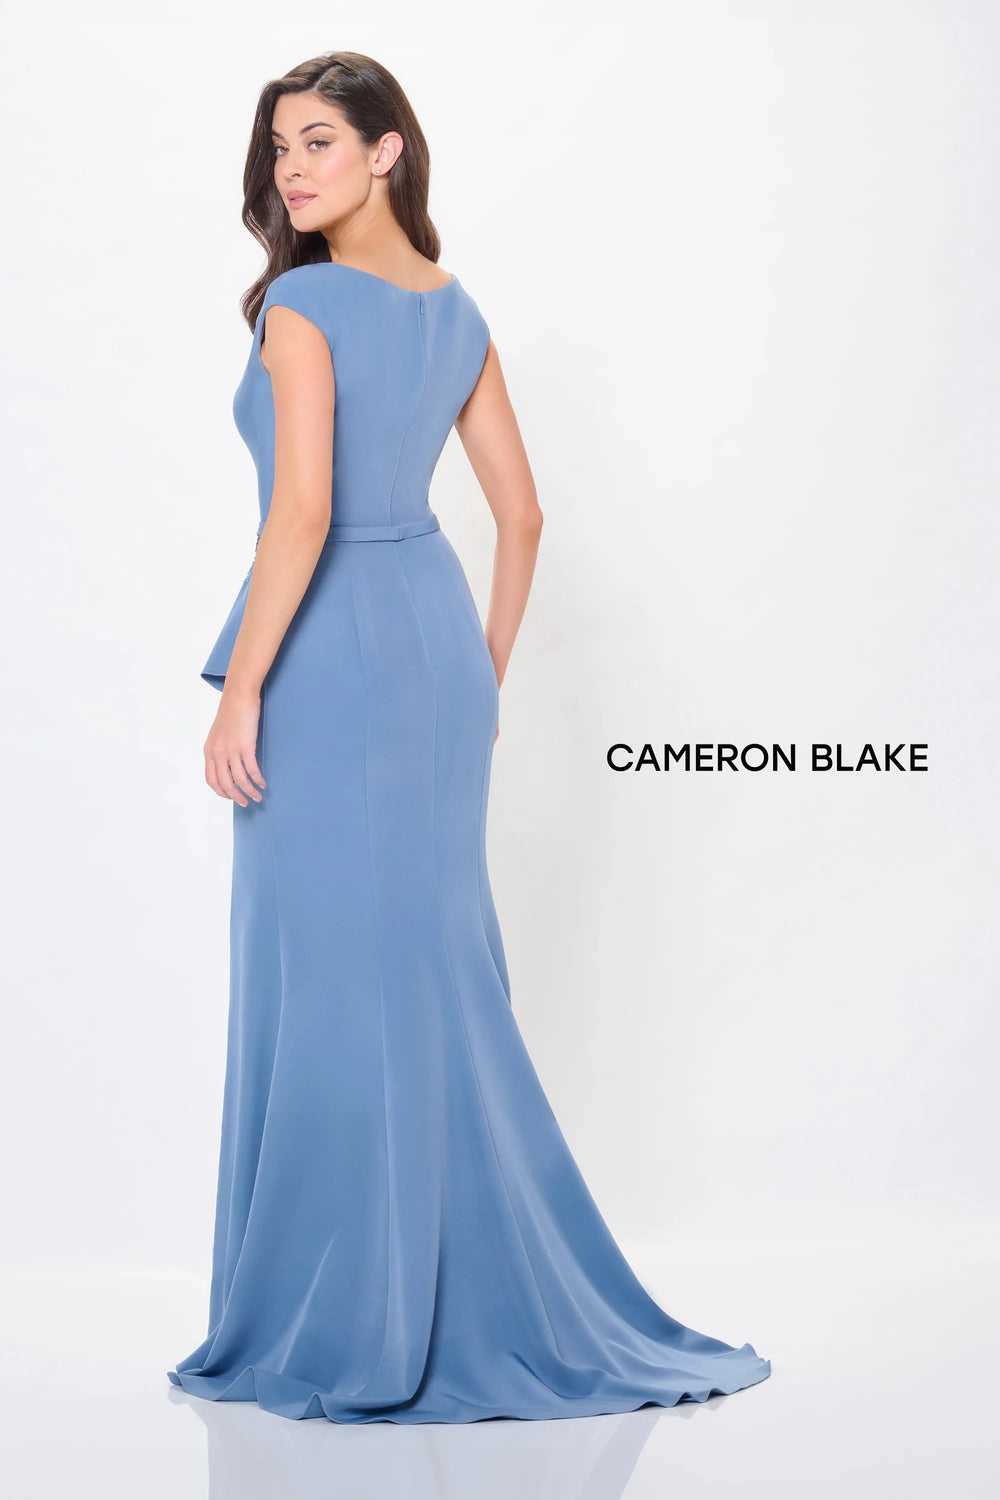 Mon Cheri Cameron Blake Dress Mon Cheri Cameron Blake CB3232 Dress